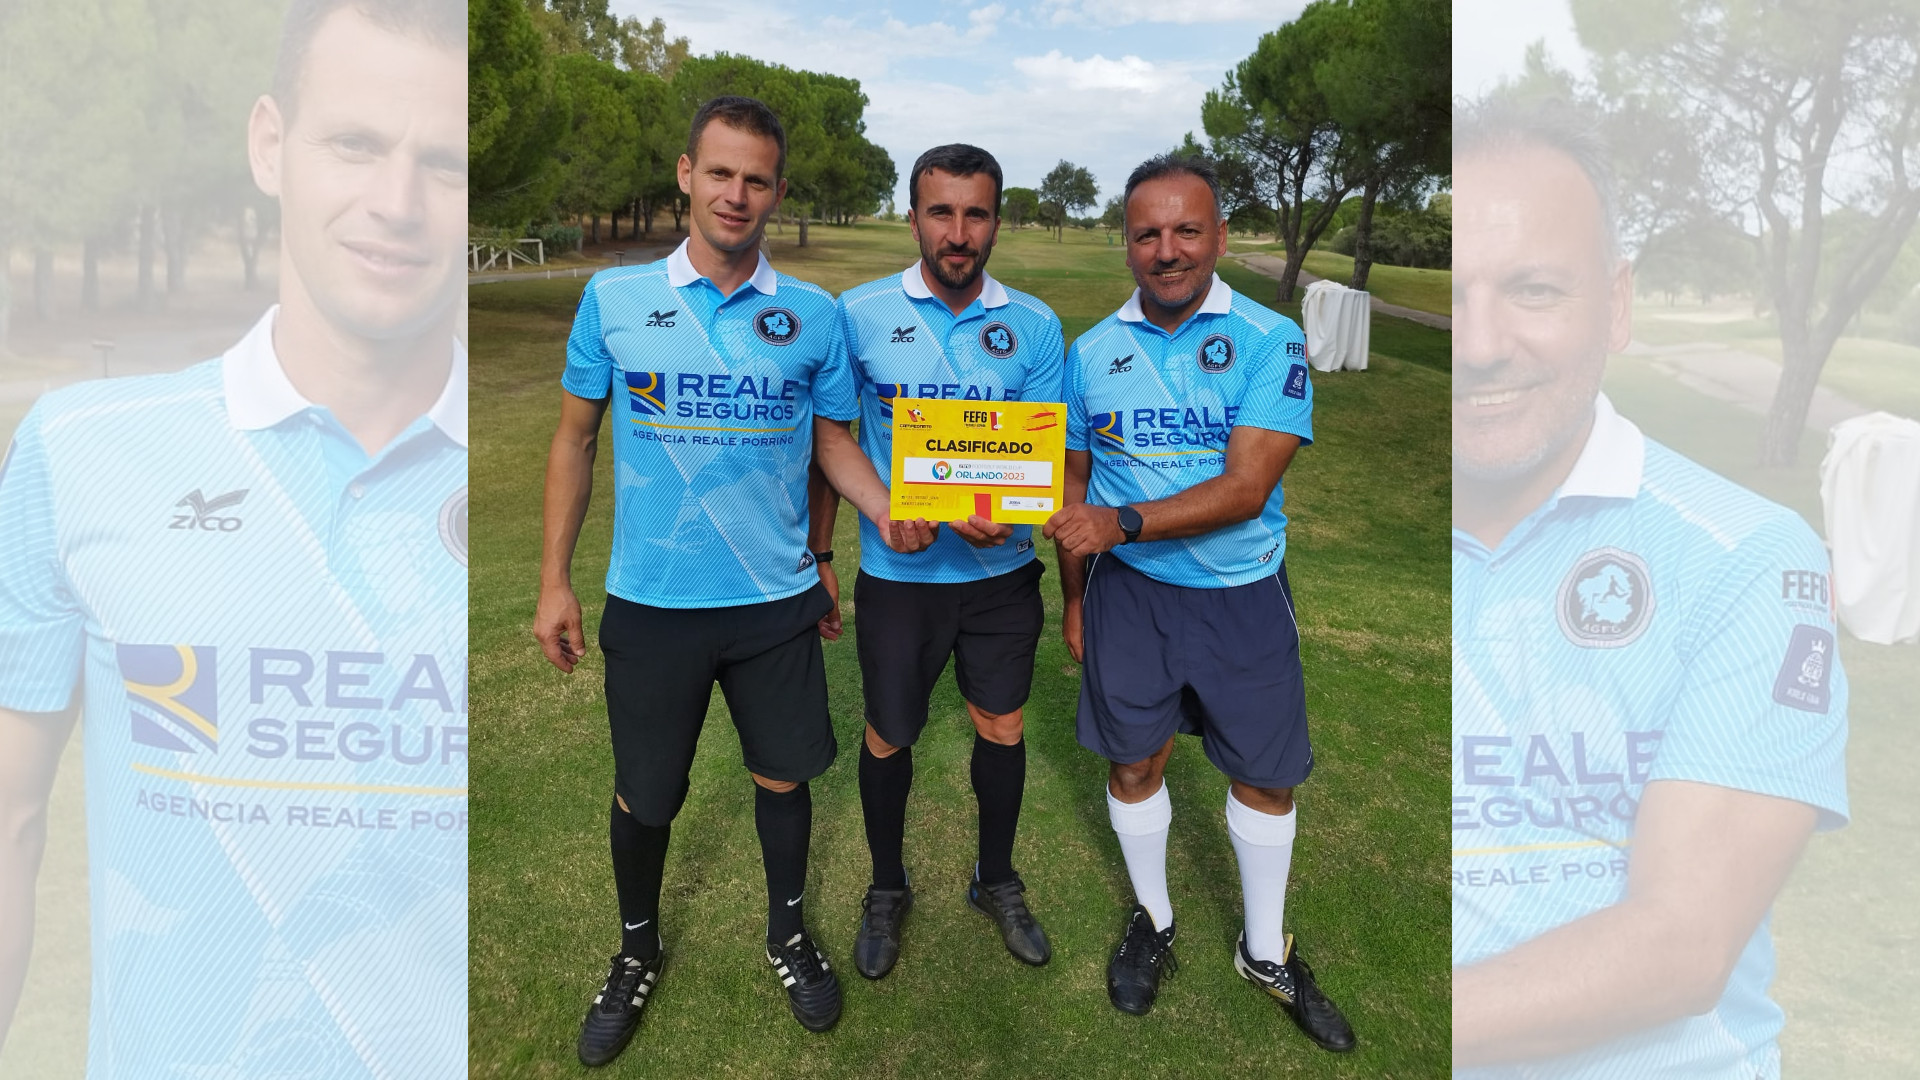 Sito Campo, Noé Cortiñas, Marco Bartomeu, los tres clasificados para el Mundial de Orlando. Foto: Cedida